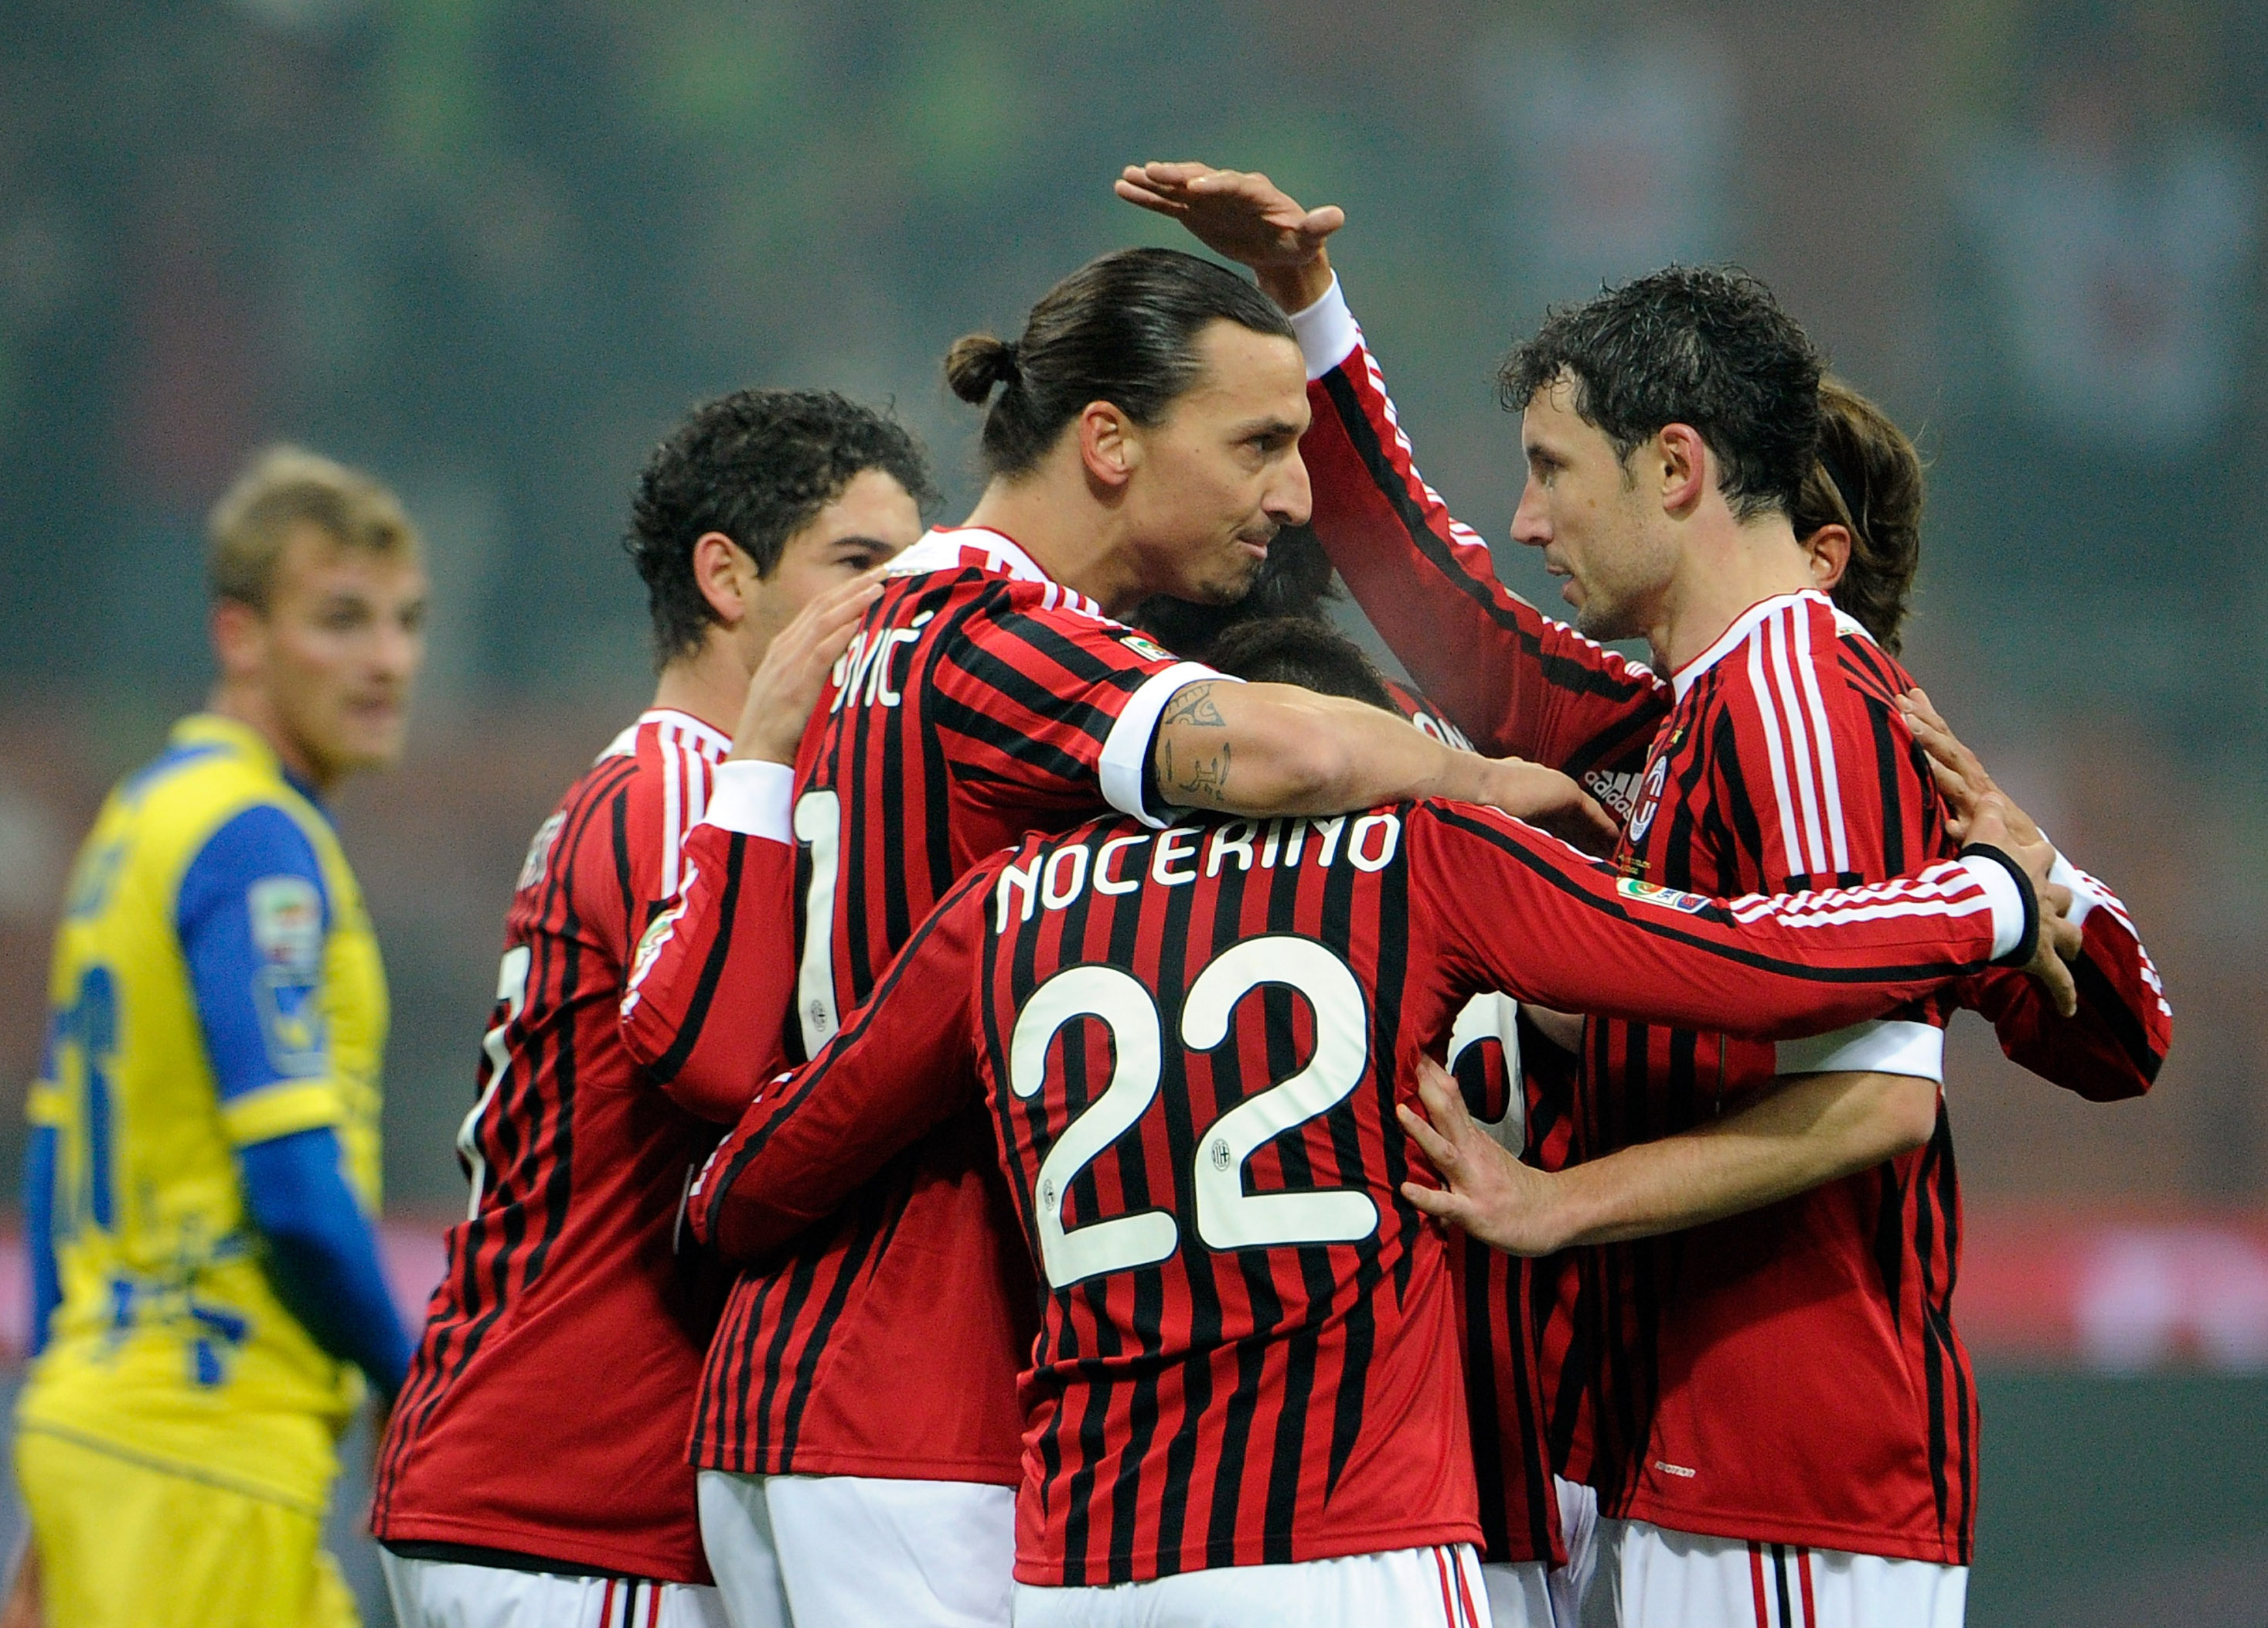 Den 27/11-2011 spelade Milan hemma mot Chievo. En match som slutade 4-0. Zlatan stod för två mål. I och med det gjode han sitt 100:de Serie A-mål.